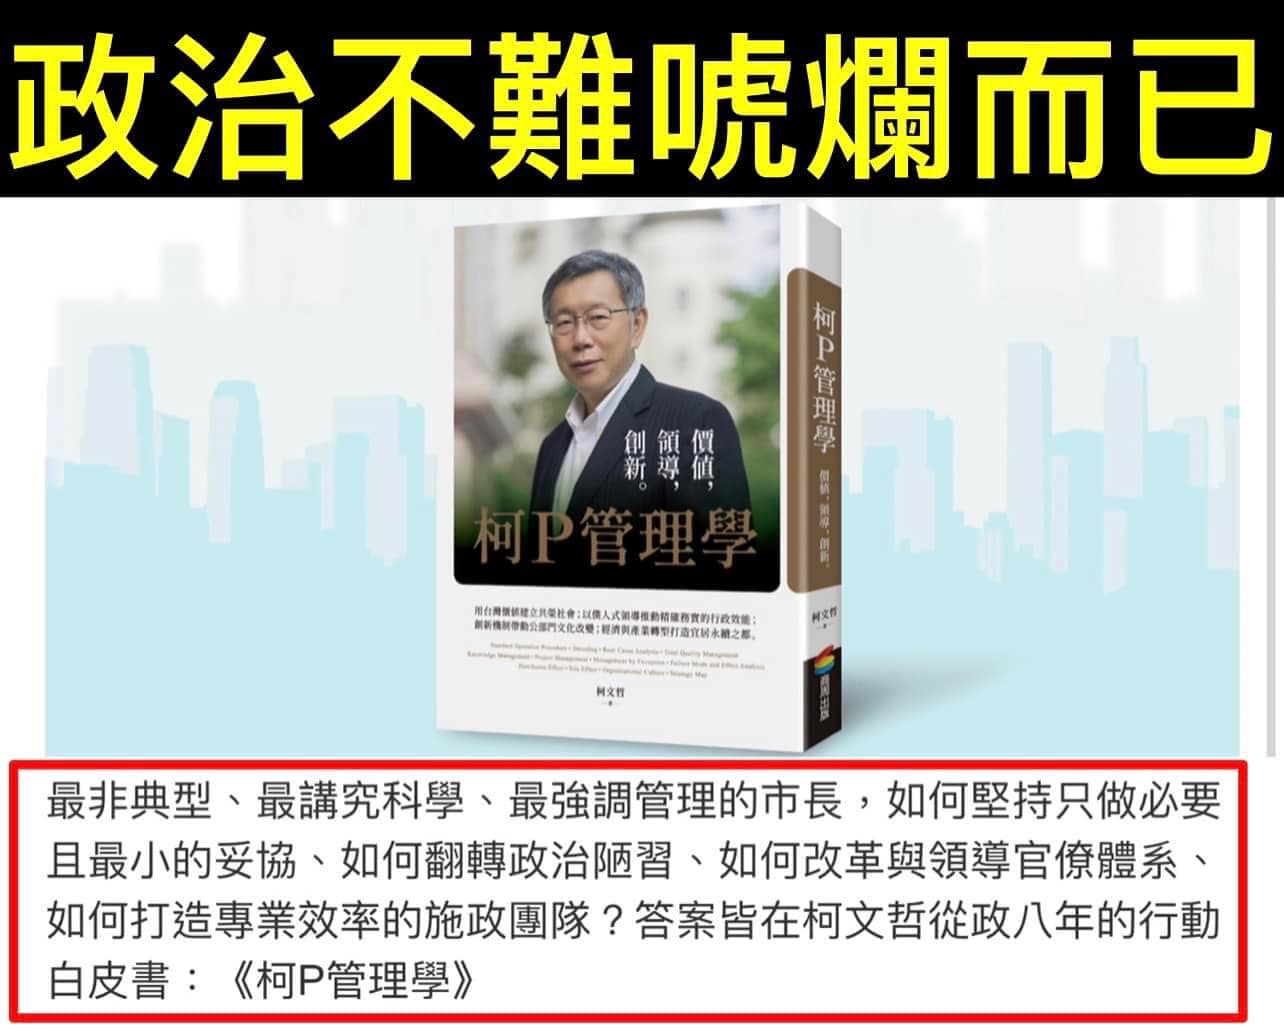 牛津大學國際關係博士汪浩在臉書上表示，對於《柯P管理學》一書，「政治不難 唬爛而已」8個字就可以總結。   圖：翻攝自汪浩臉書